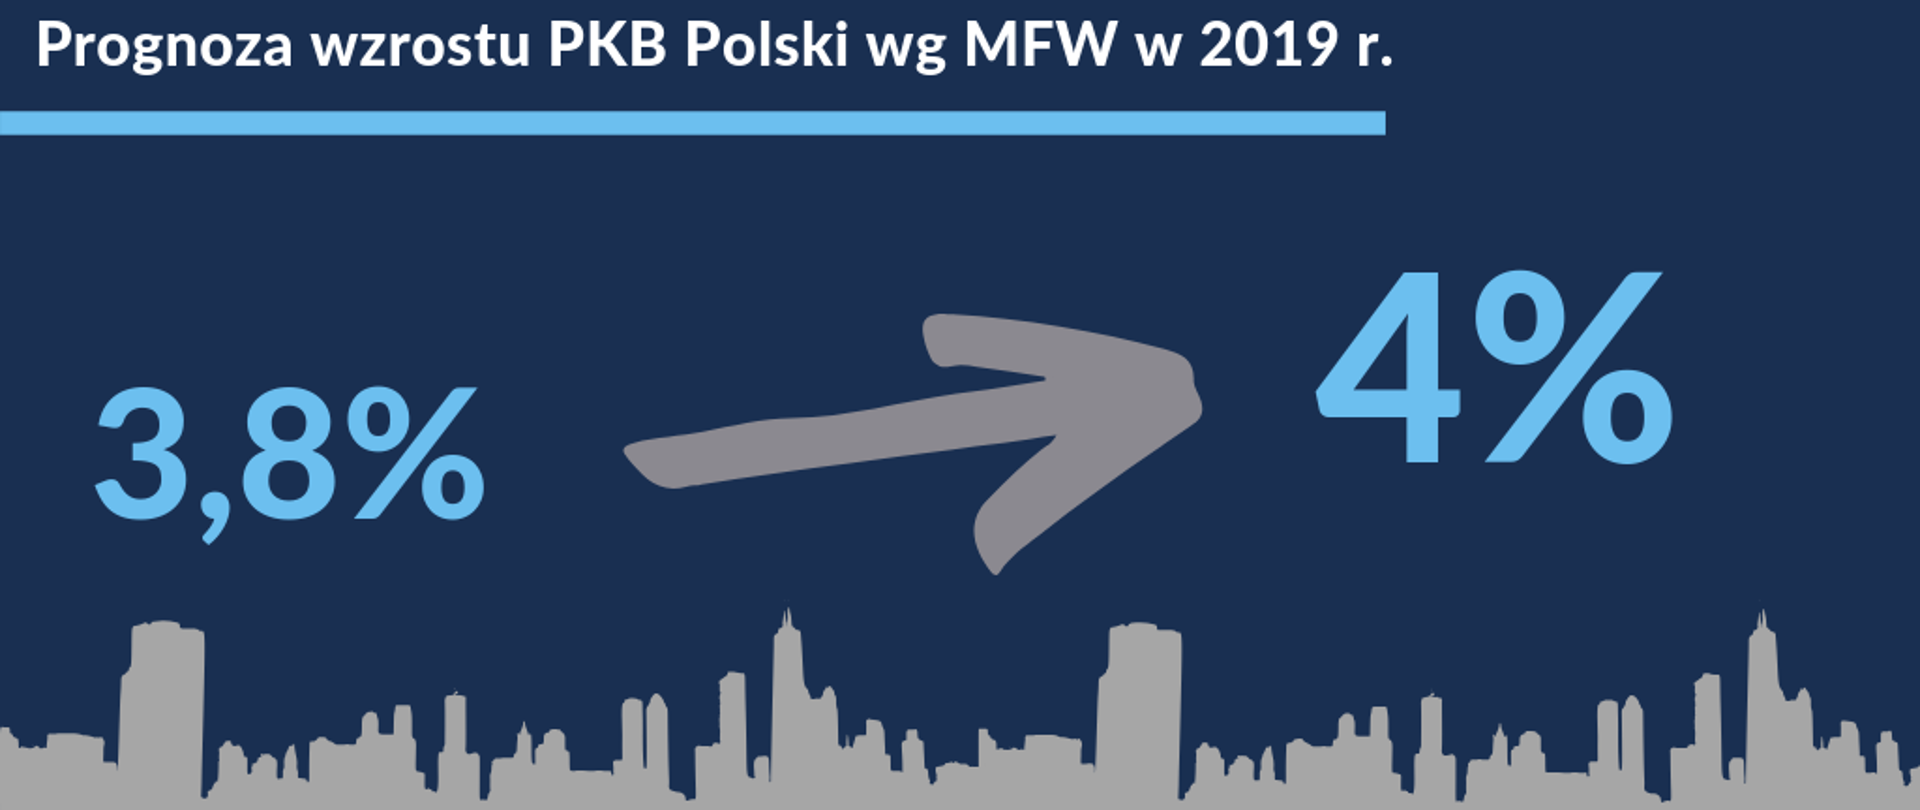 Grafika na której jest napisane " Prognoza wzrostu PKB Polski wg MFW w 2019 r.". Na grafice umieszczona jest również liczba 3,8% od której odchodzi strzałka do 4%